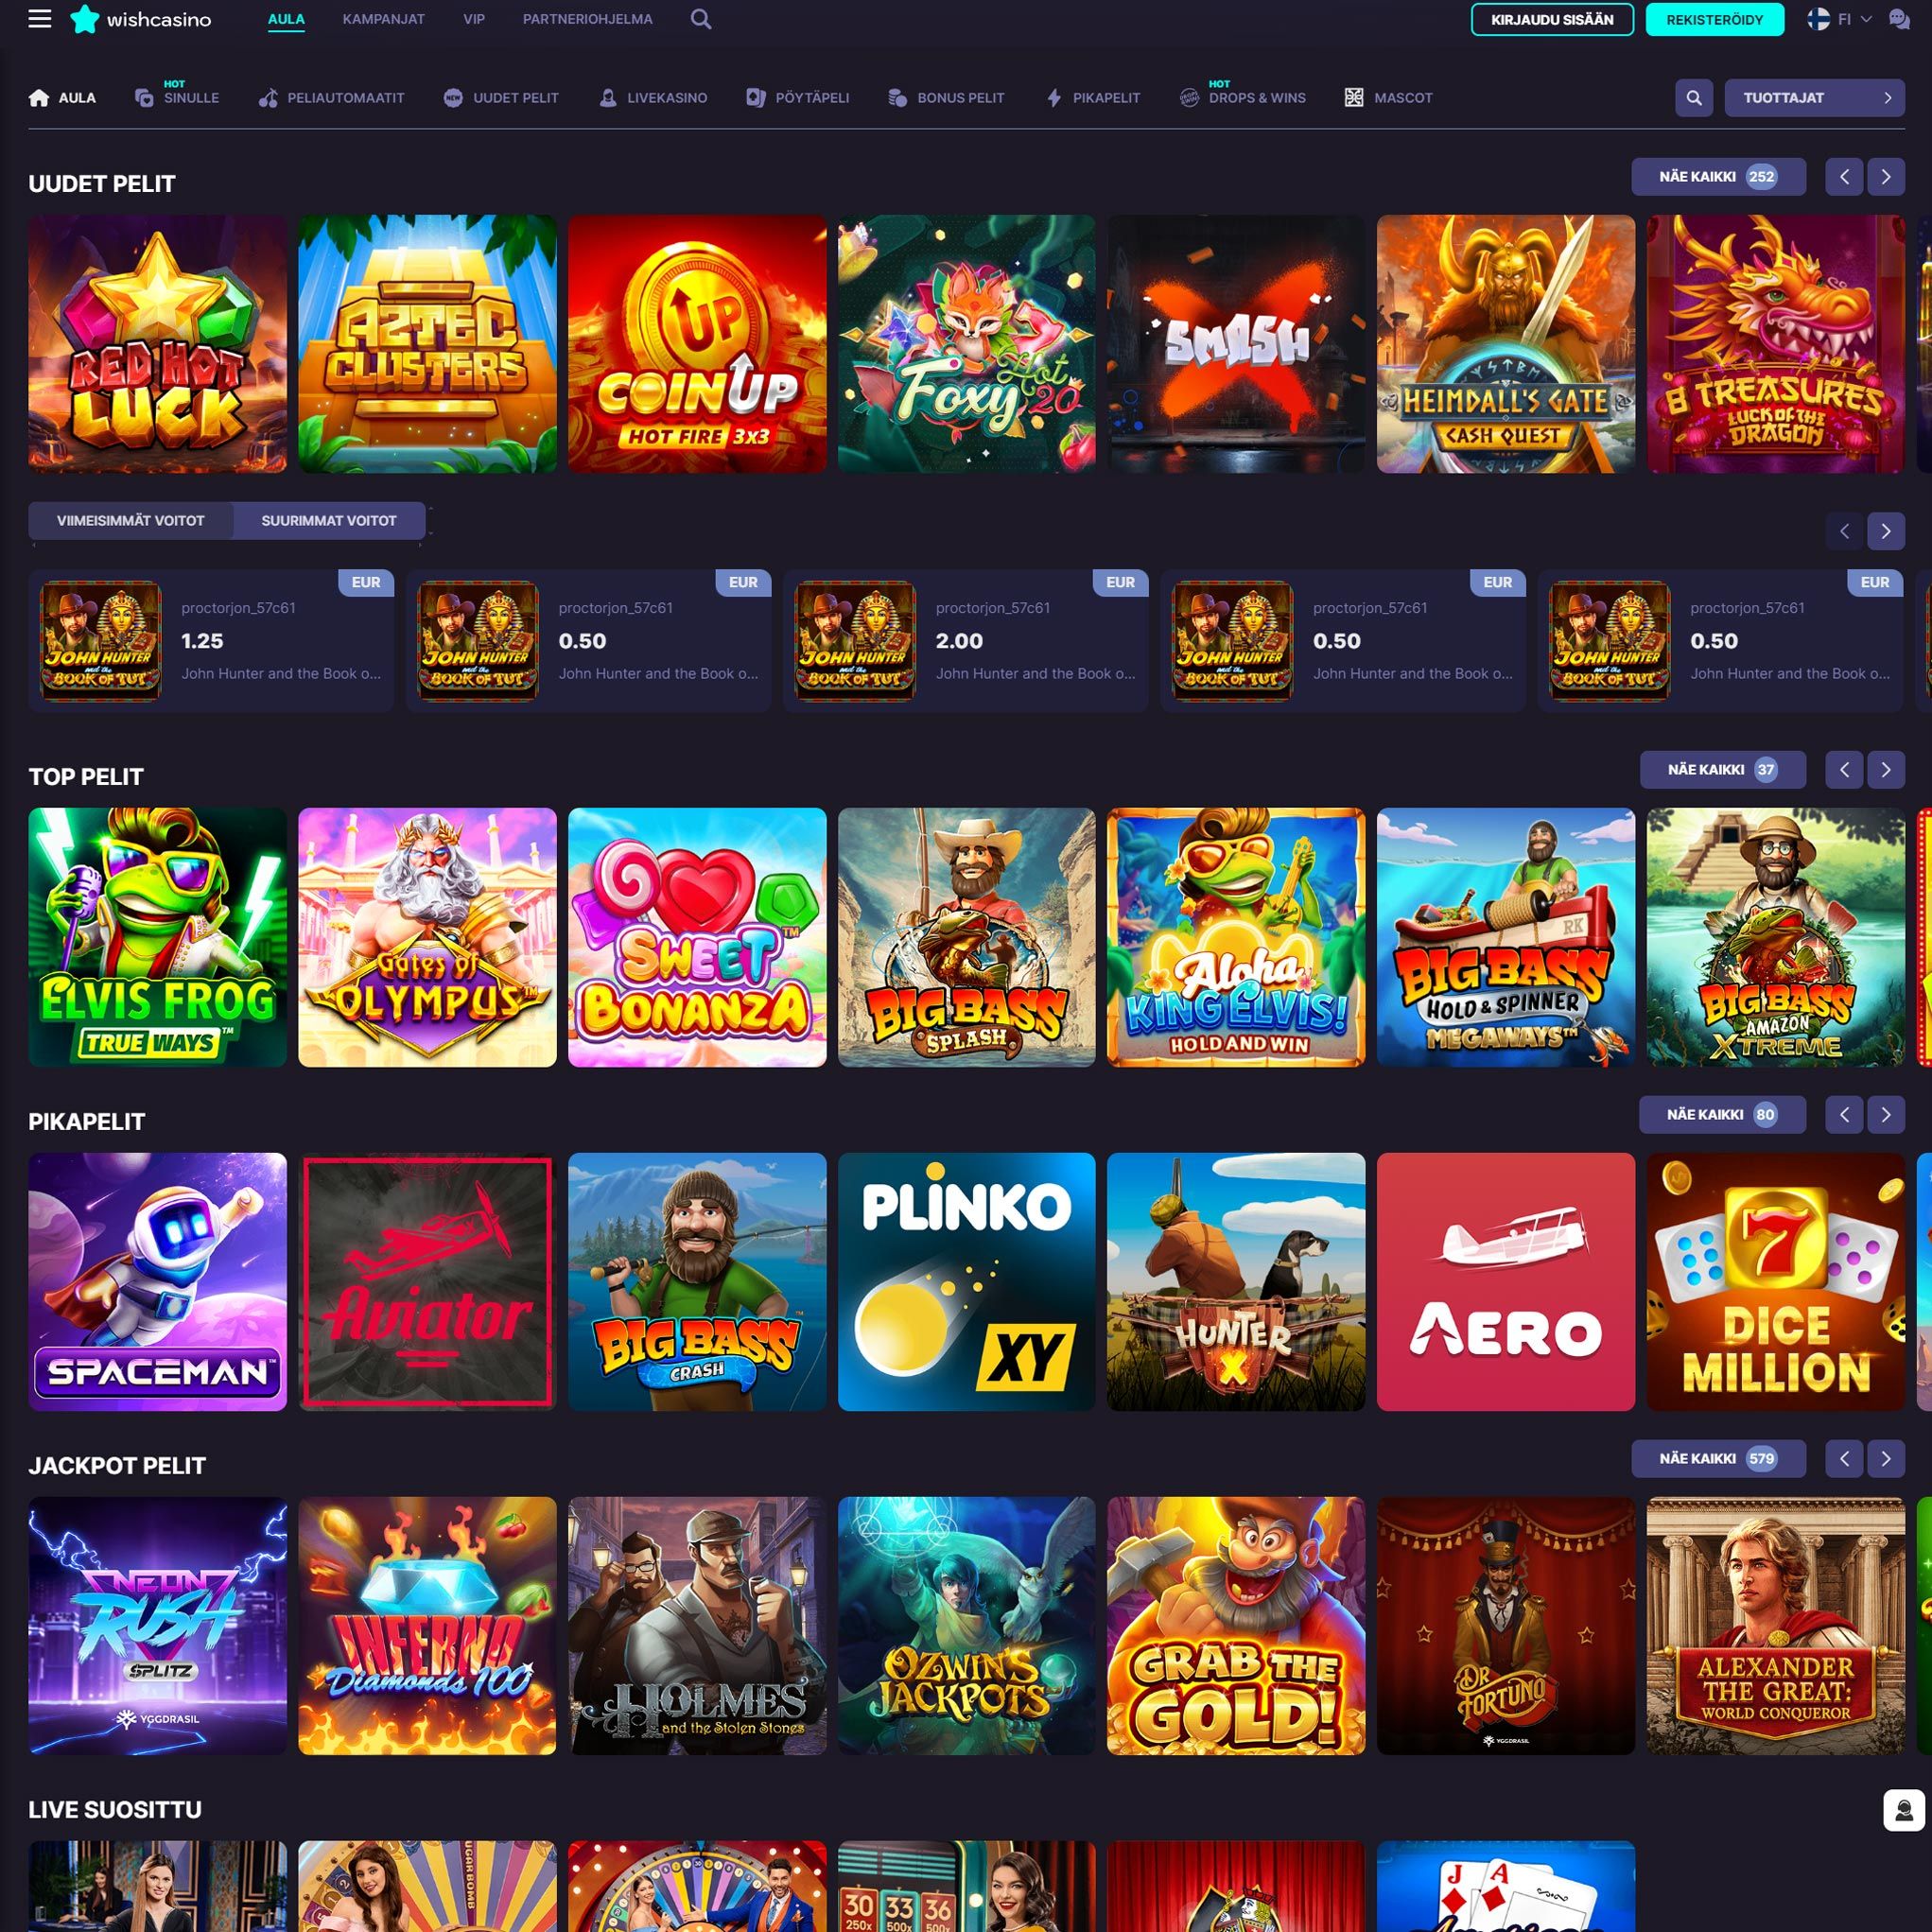 Suomalaiset nettikasinot tarjoavat monia hyötyjä pelaajille. Wish Casino on suosittelemamme nettikasino, jolle voit lunastaa bonuksia ja muita etuja.